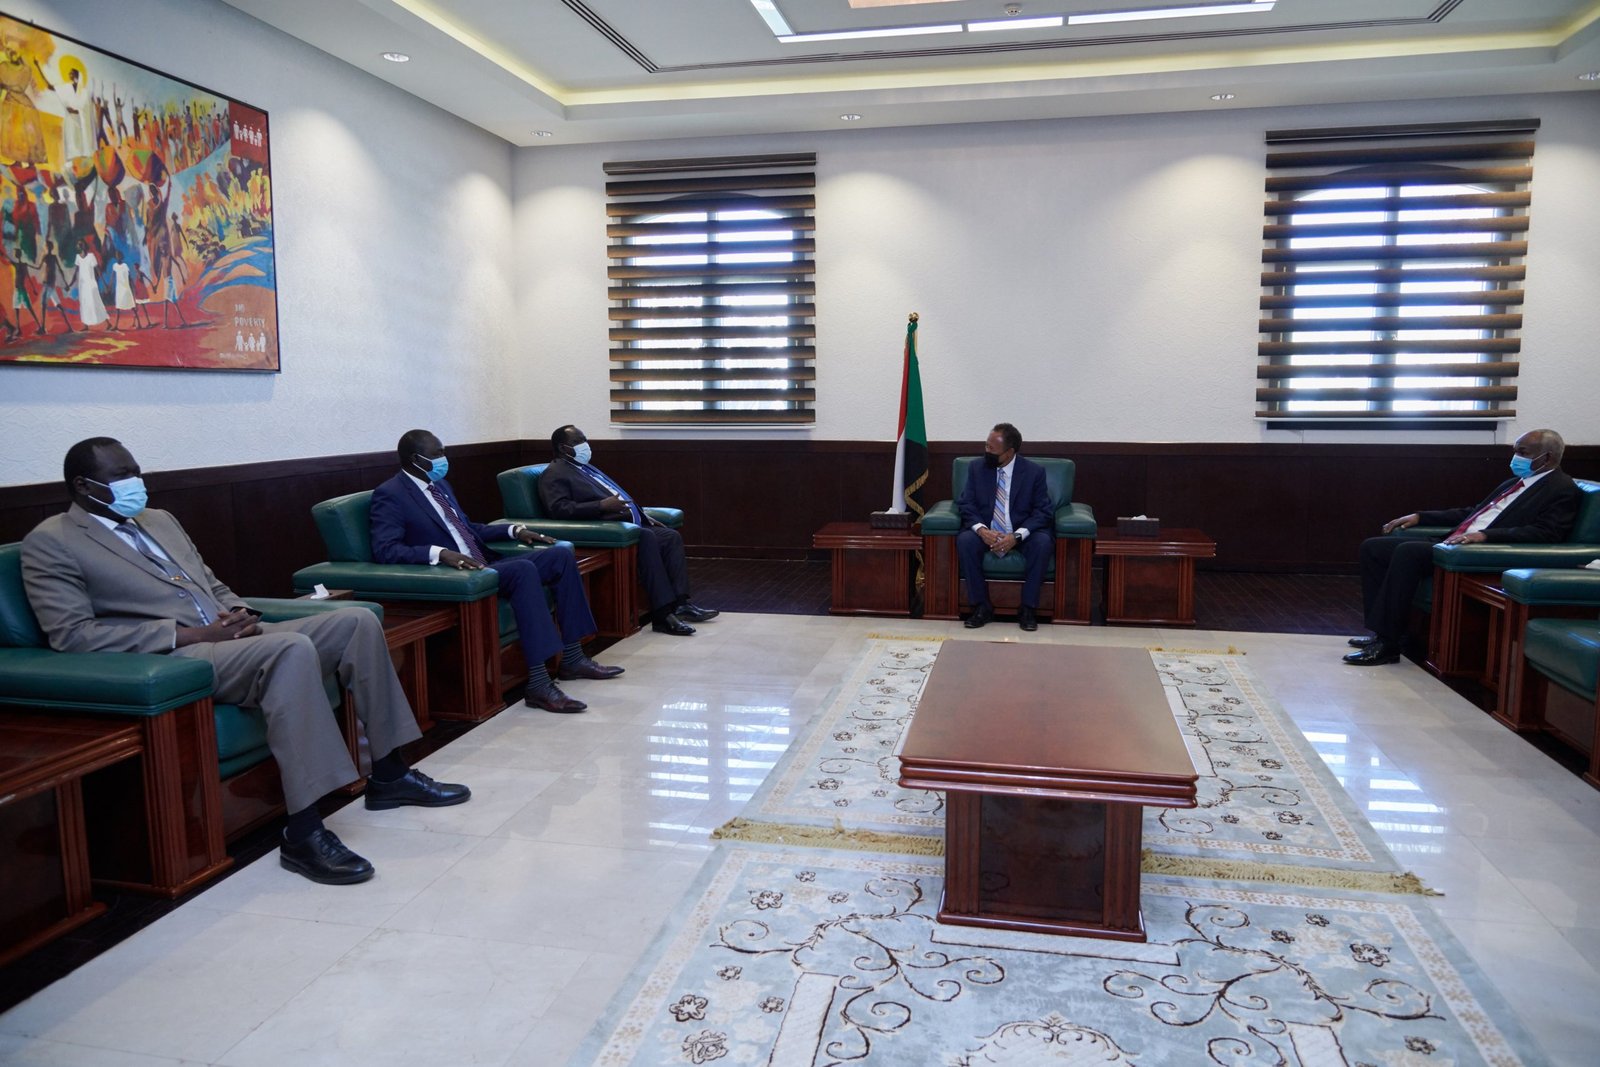 مبعوث رئاسي يكشف تفاصيل جديدة عن مبادرة سلفاكير لحل قضية الحدود بين السودان واثيوبيا